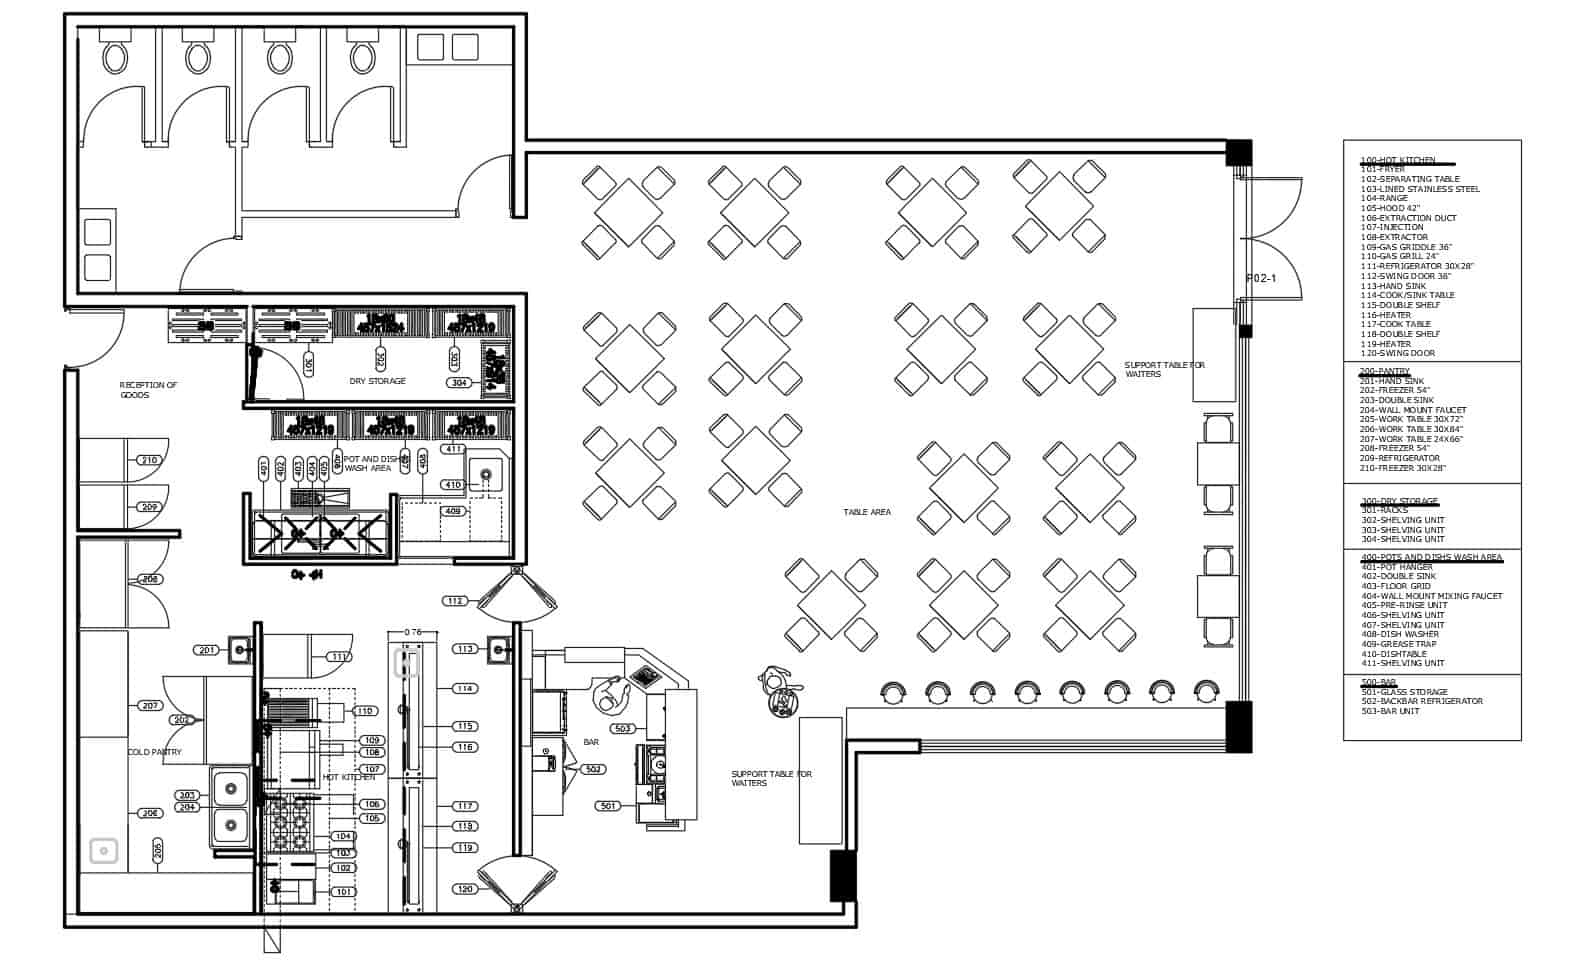 Complete Restaurant Kitchen Layout Plan 0608201 - INOX KITCHEN DESIGN